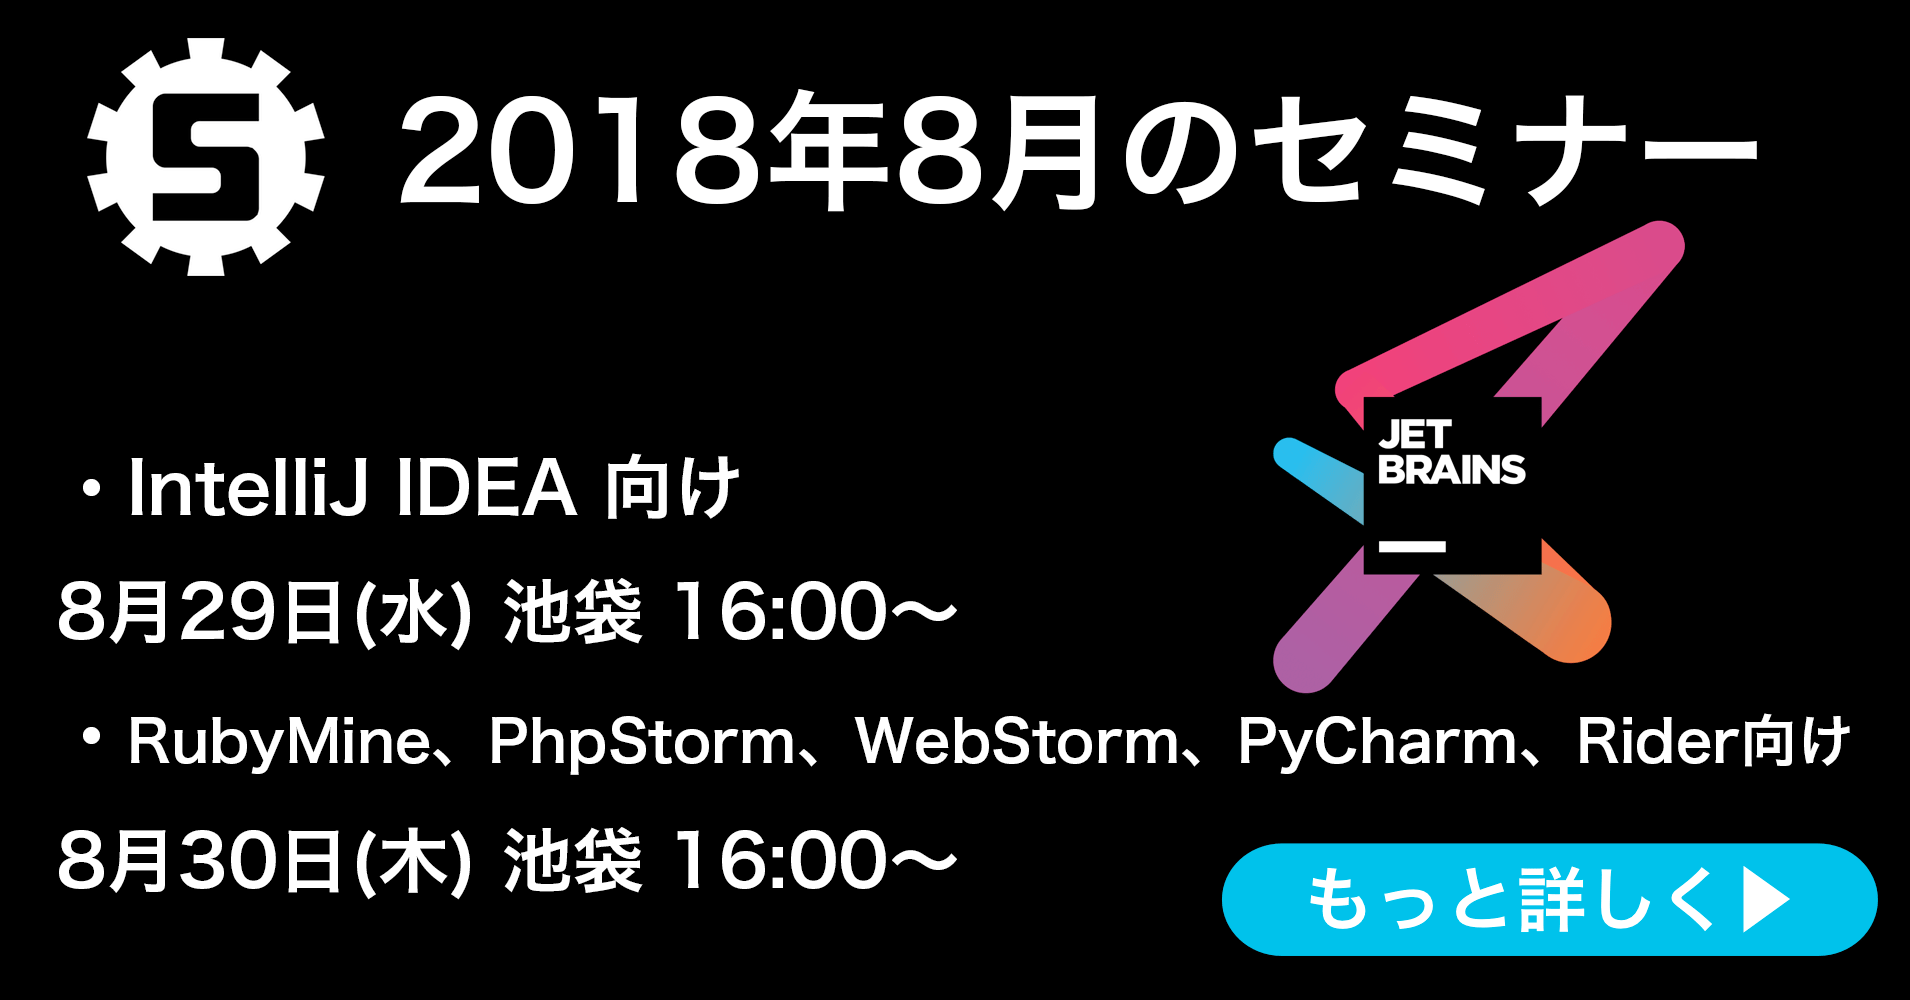 8月のJetBrains製品日本語ハンズオンセミナーの日程